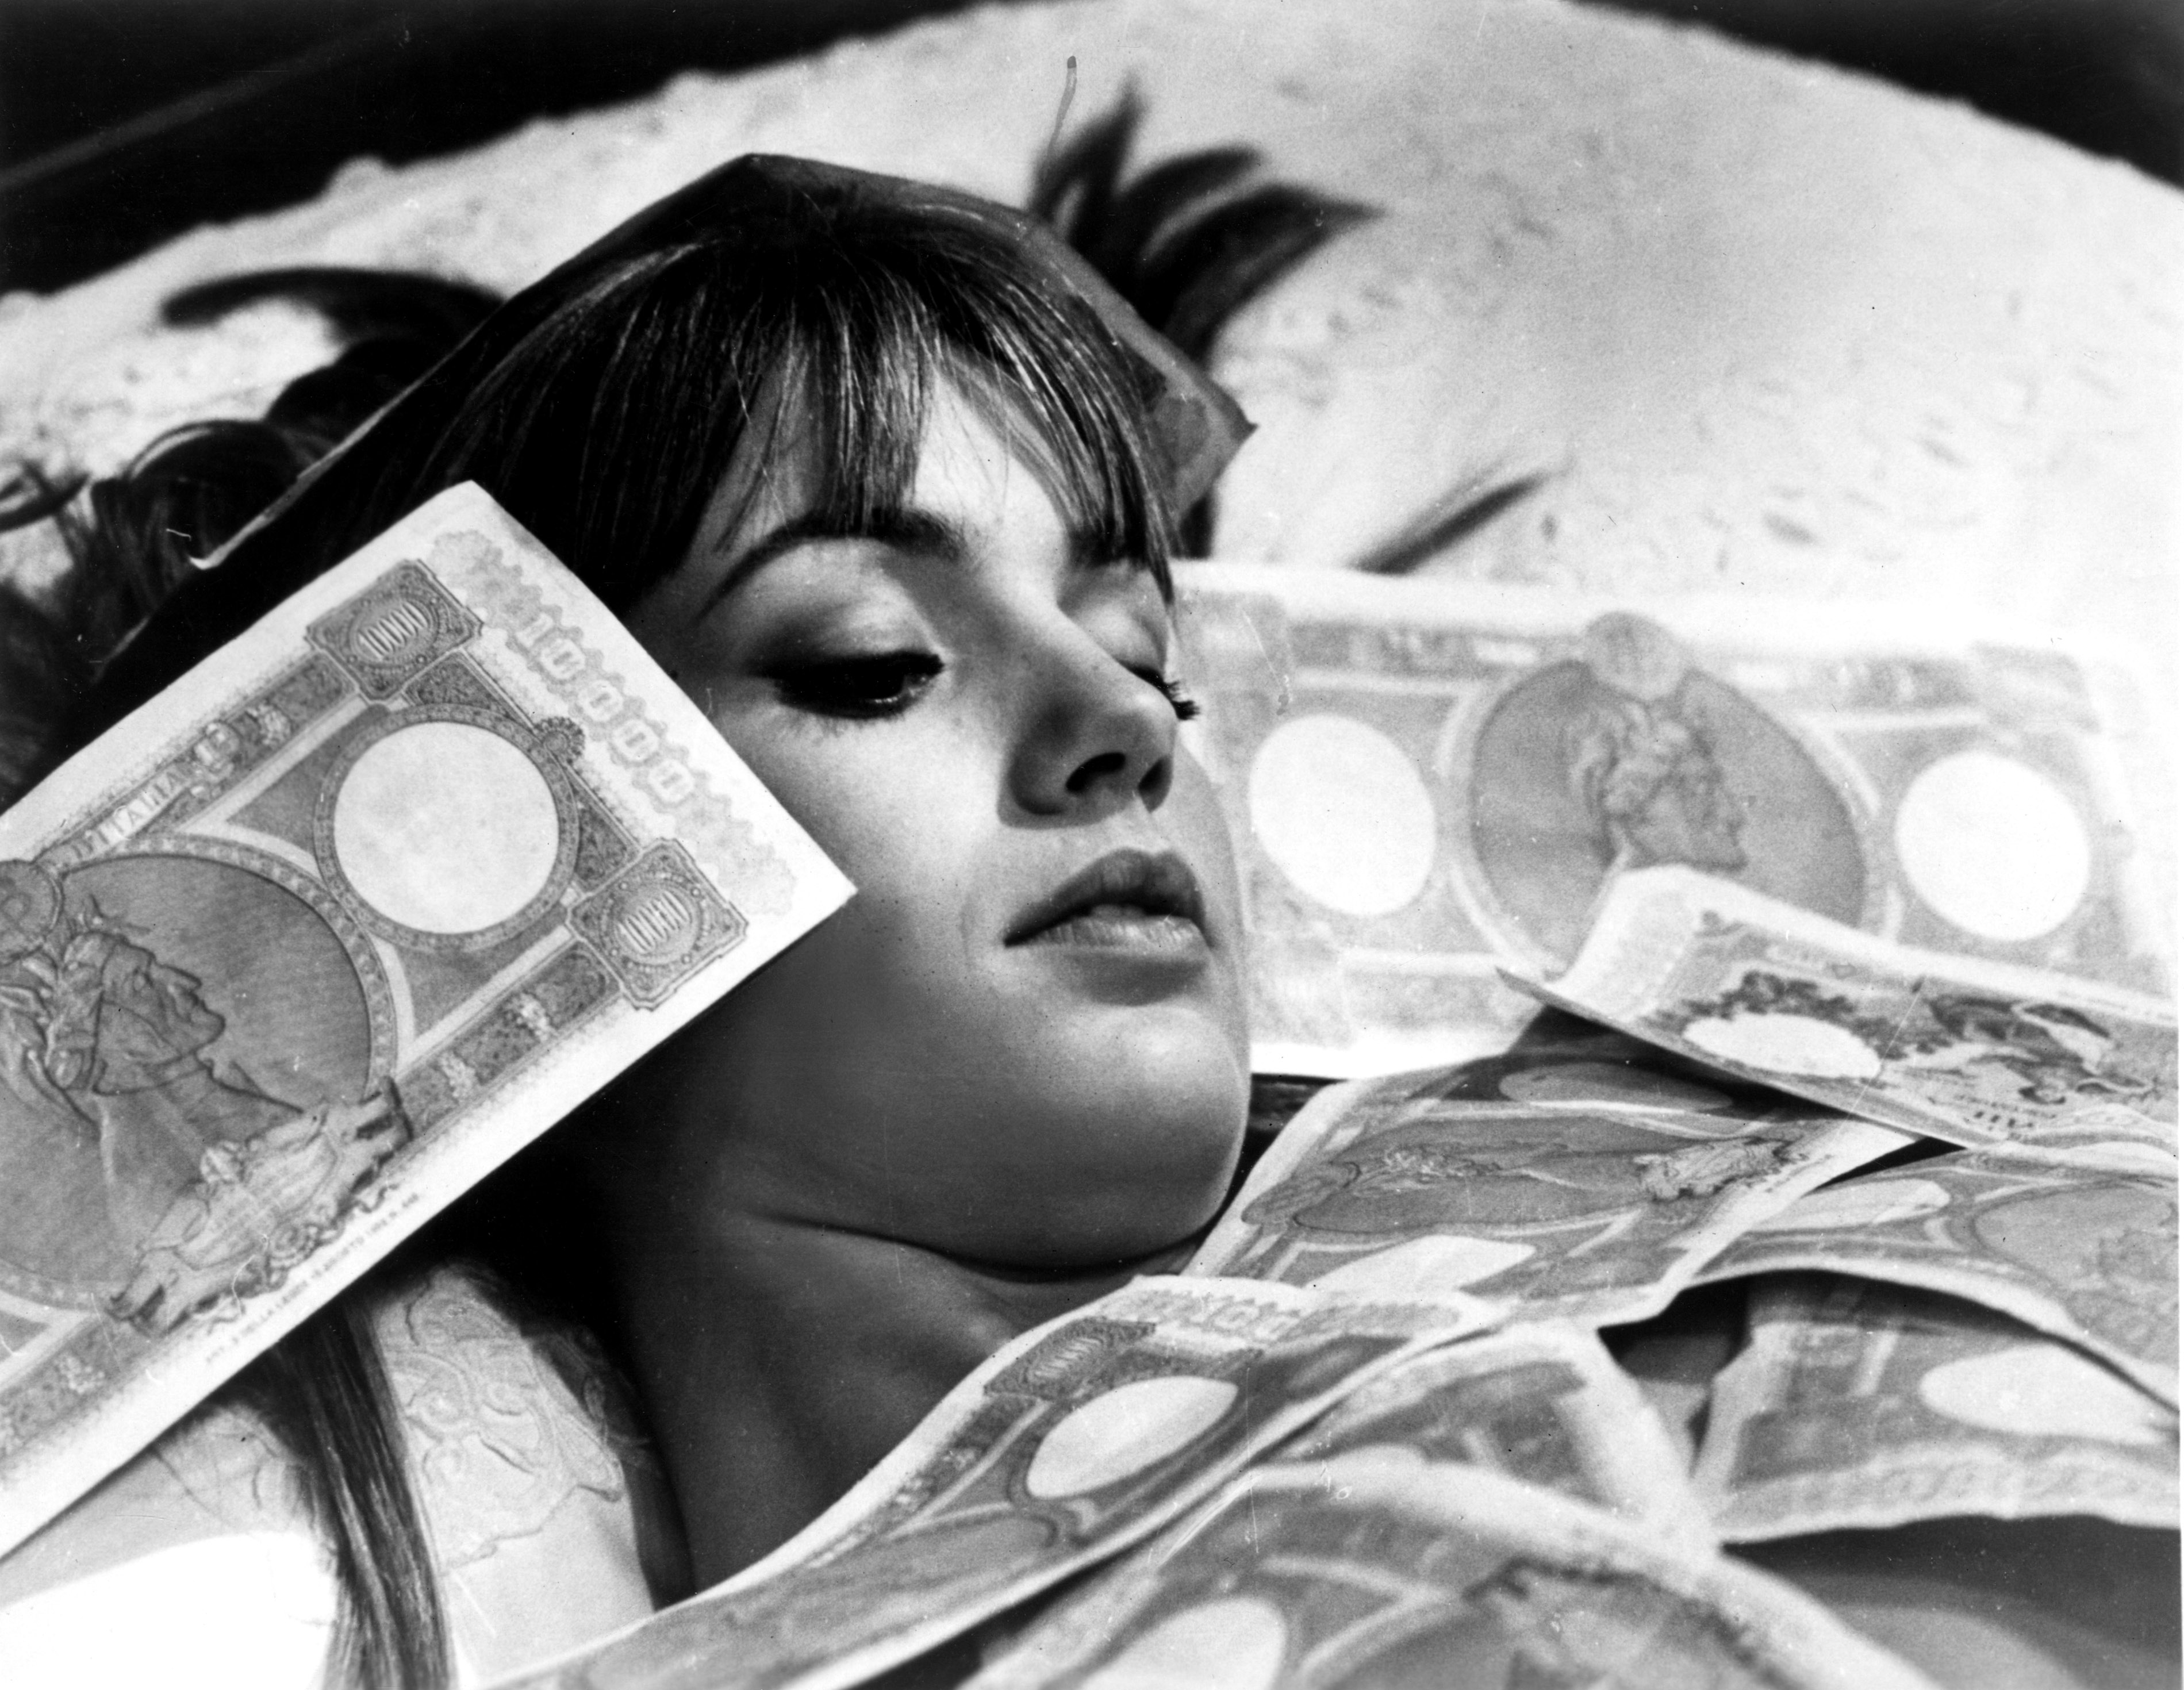 La famosa scena del film "La noia" di Damiano Damiani, 1963